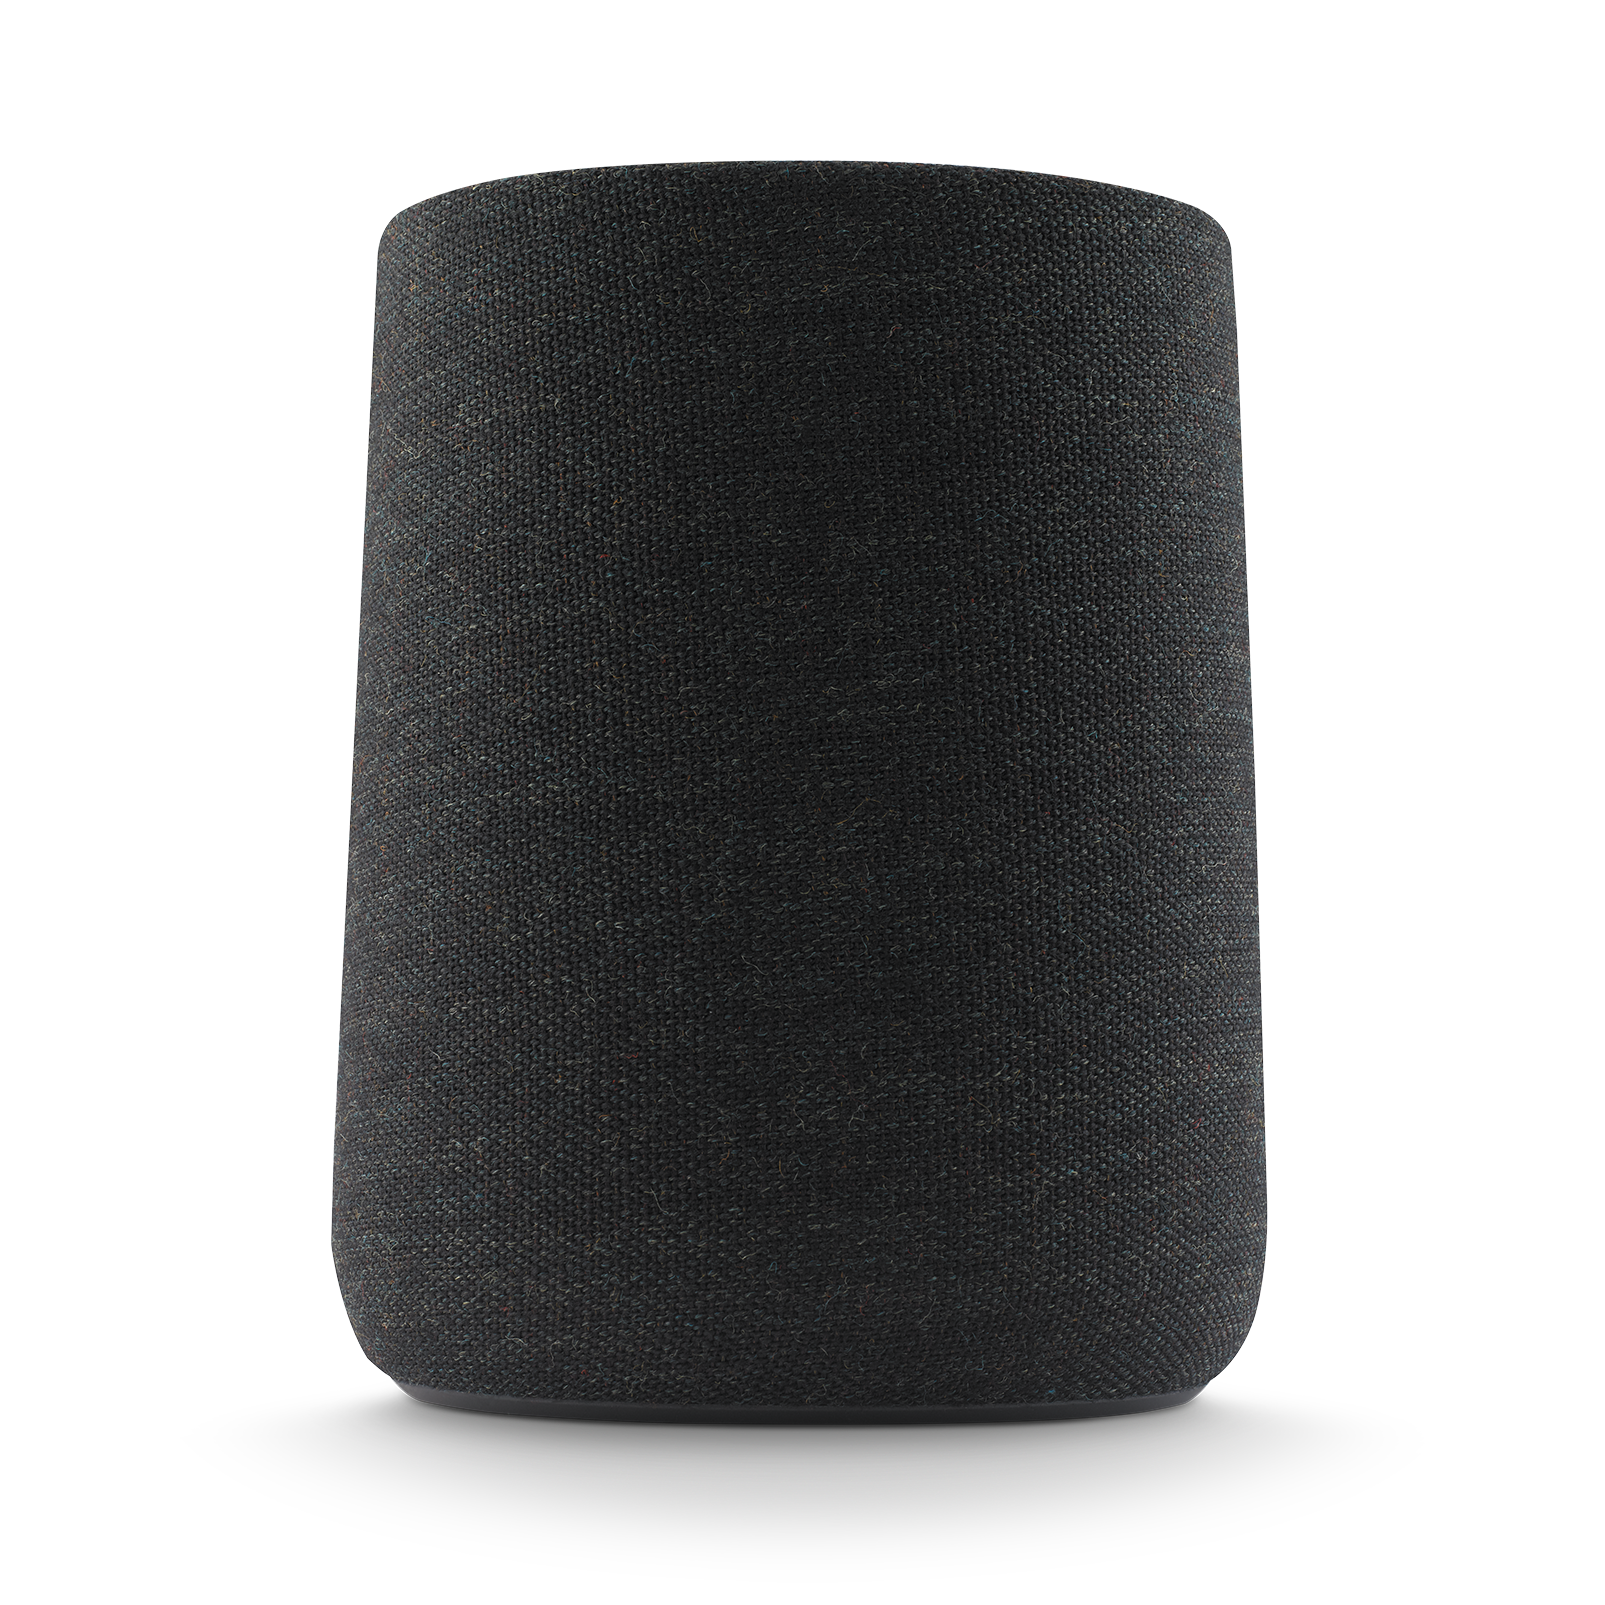 Harman Kardon Citation One MKIII - Black - All-in-one smart speaker with room-filling sound - Detailshot 1